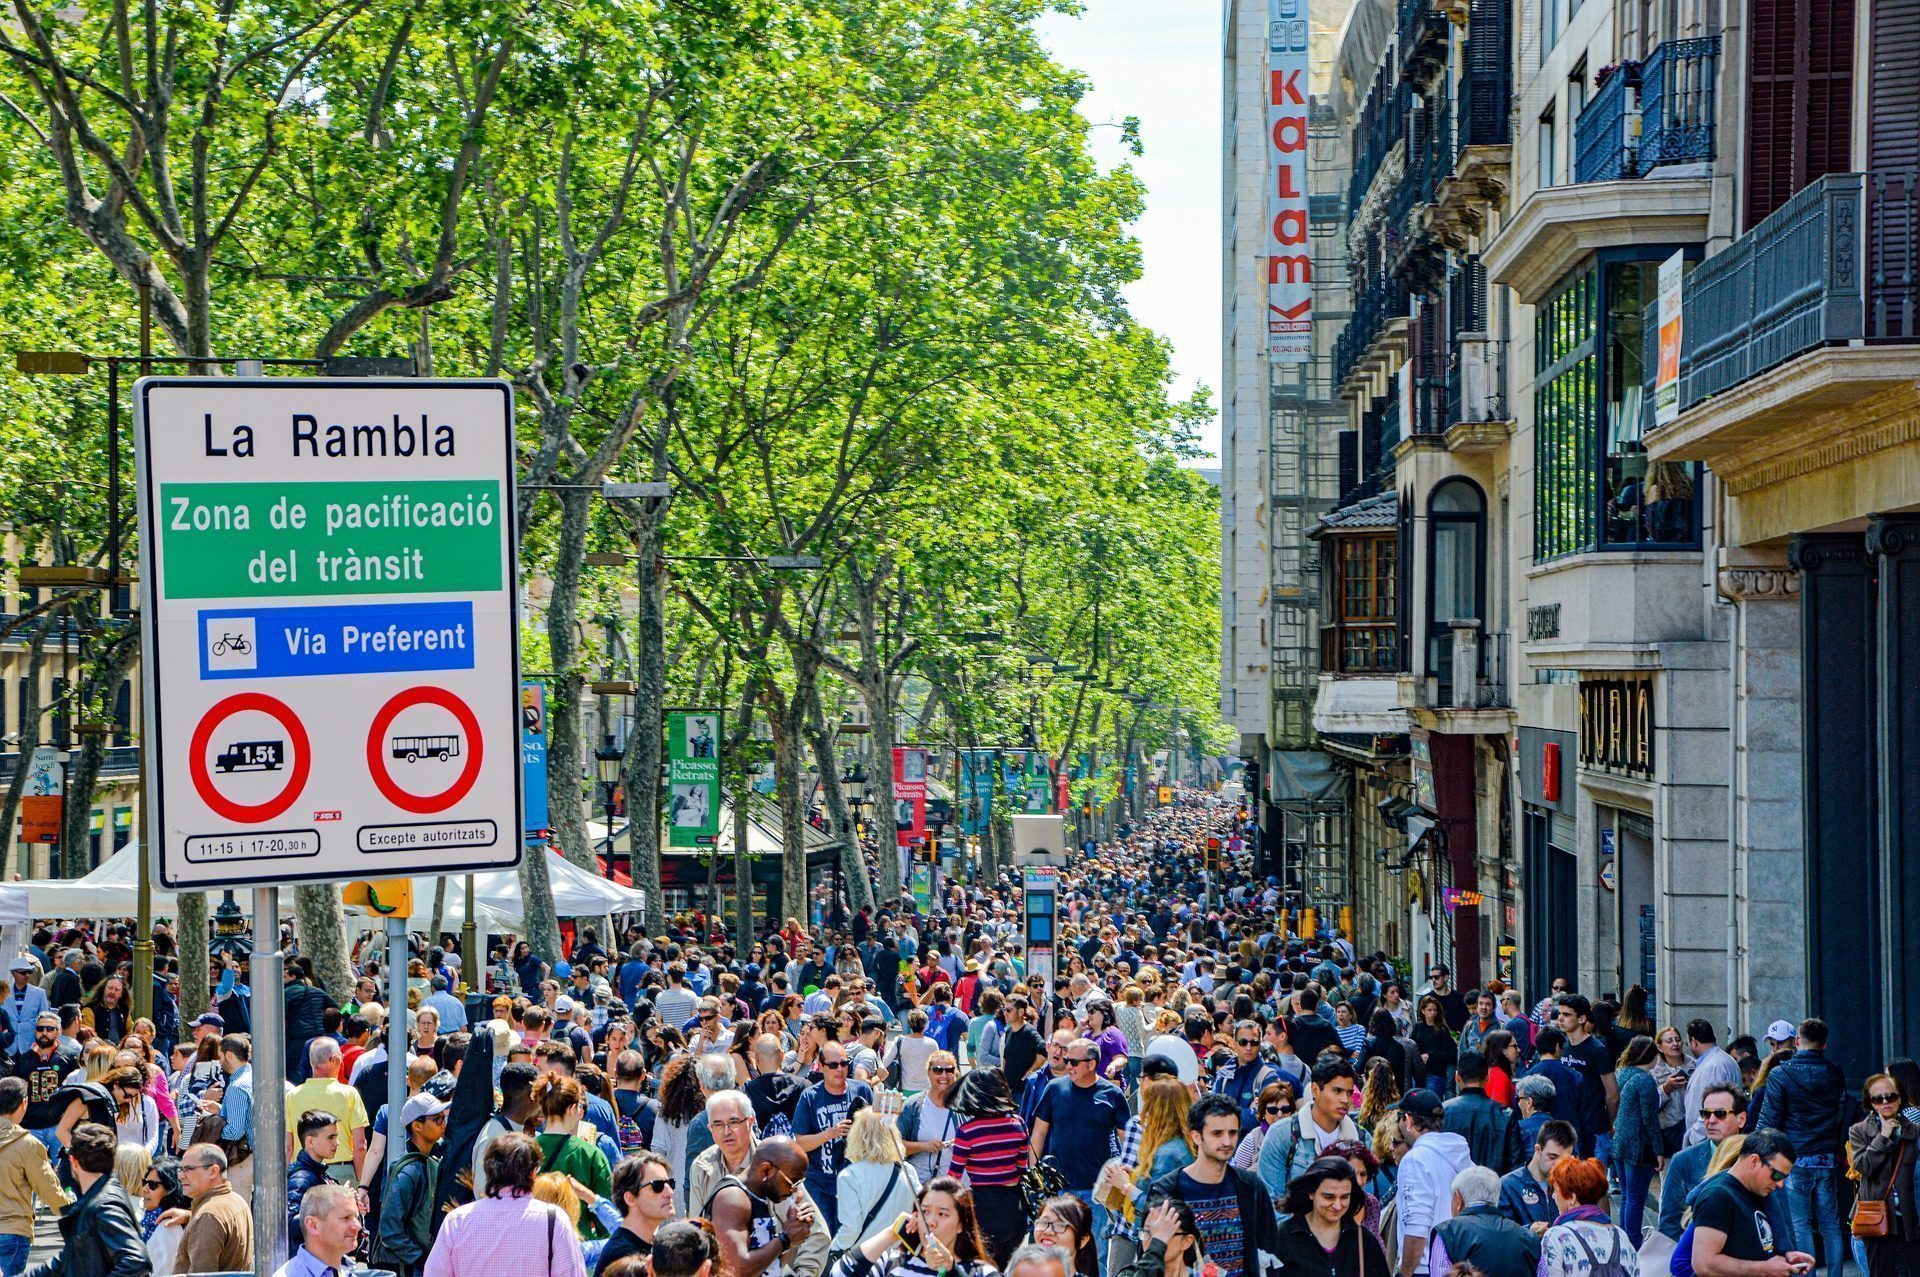 Una multitud de turistas en la calle La Rambla de Barcelona. Crédito de la foto: Nikolaus Bader: https://pixabay.com/images/id-4919890/